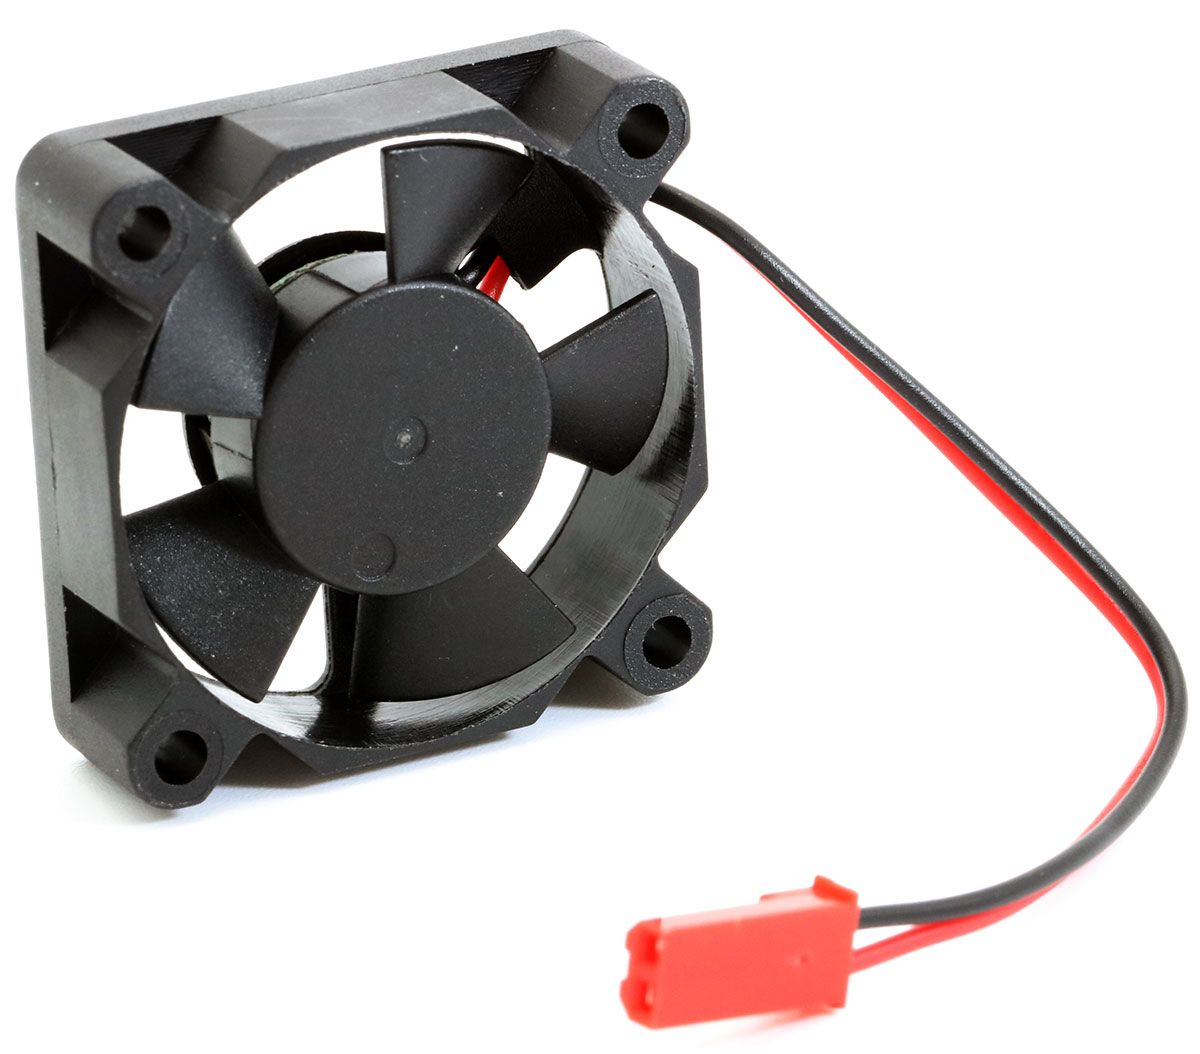 35mm Ultra High Speed Motor / ESC Cooling Fan